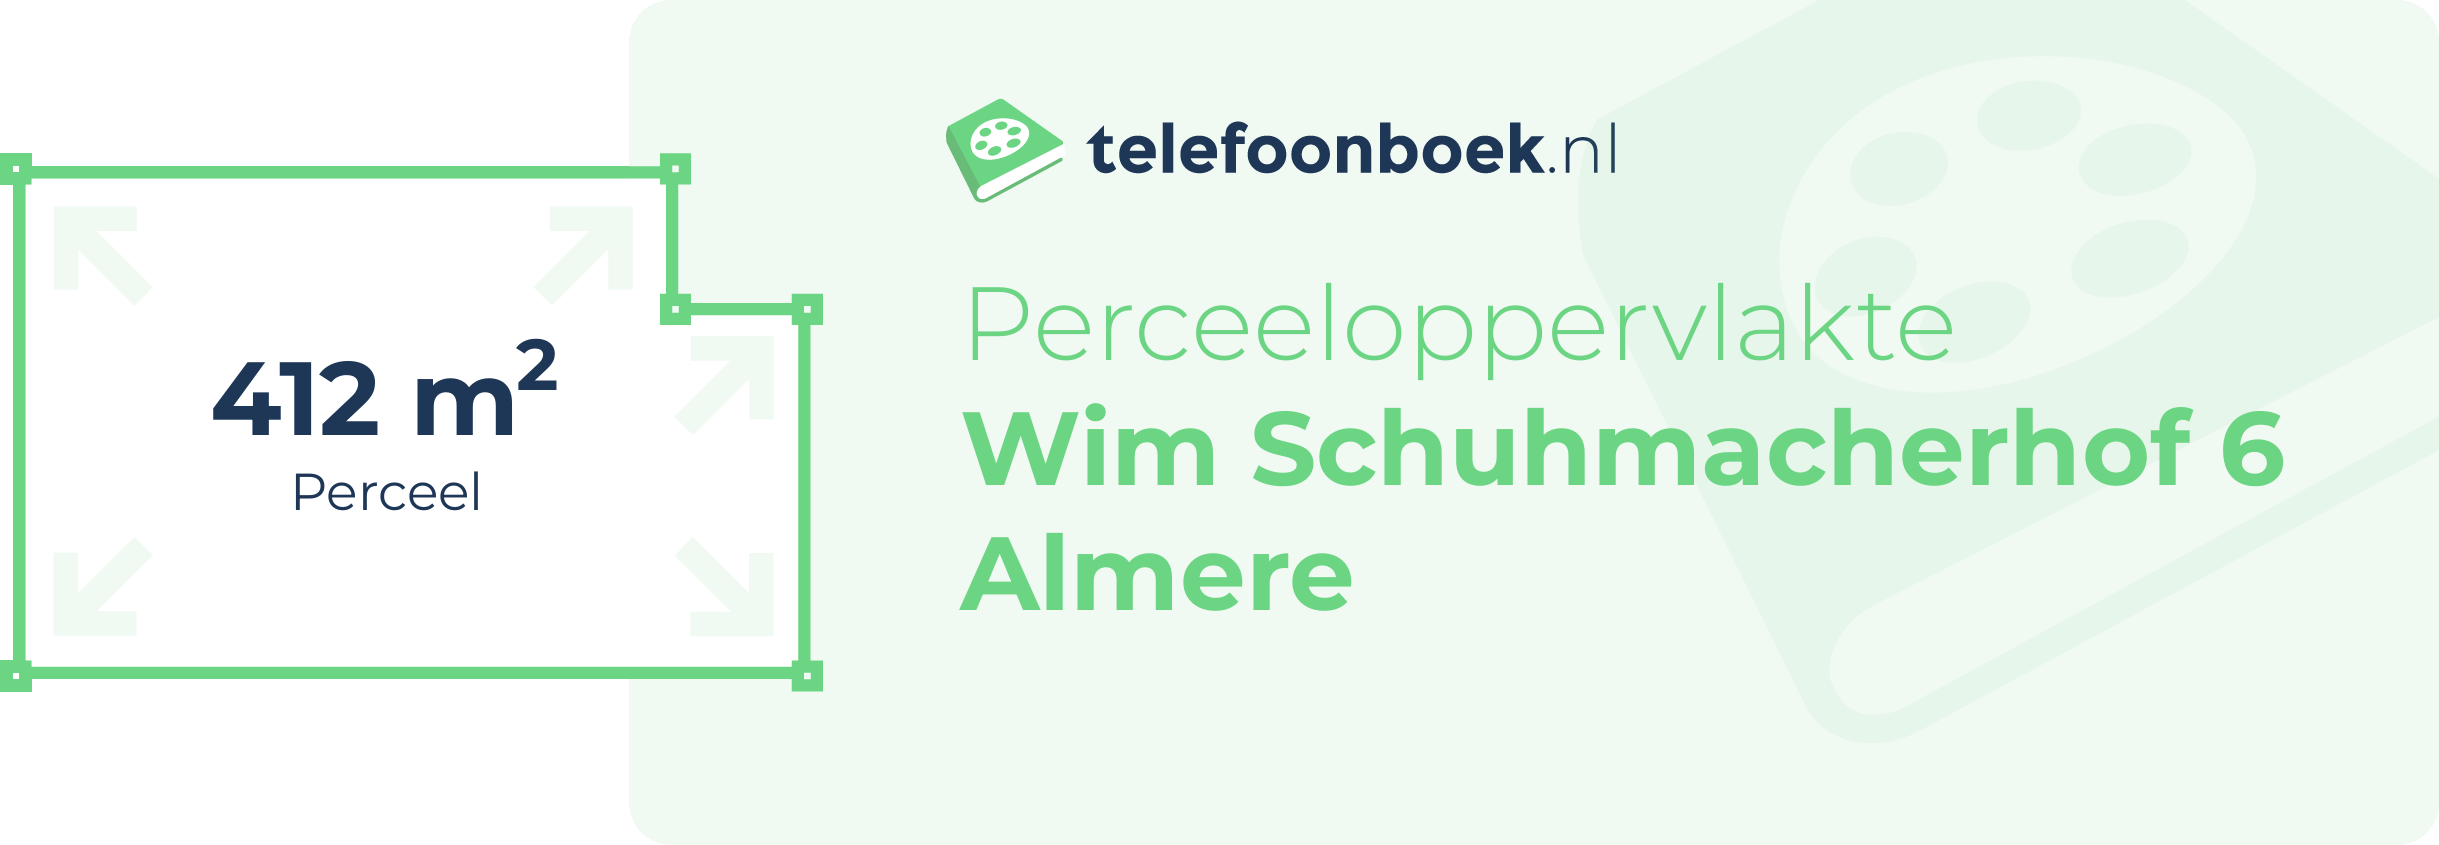 Perceeloppervlakte Wim Schuhmacherhof 6 Almere